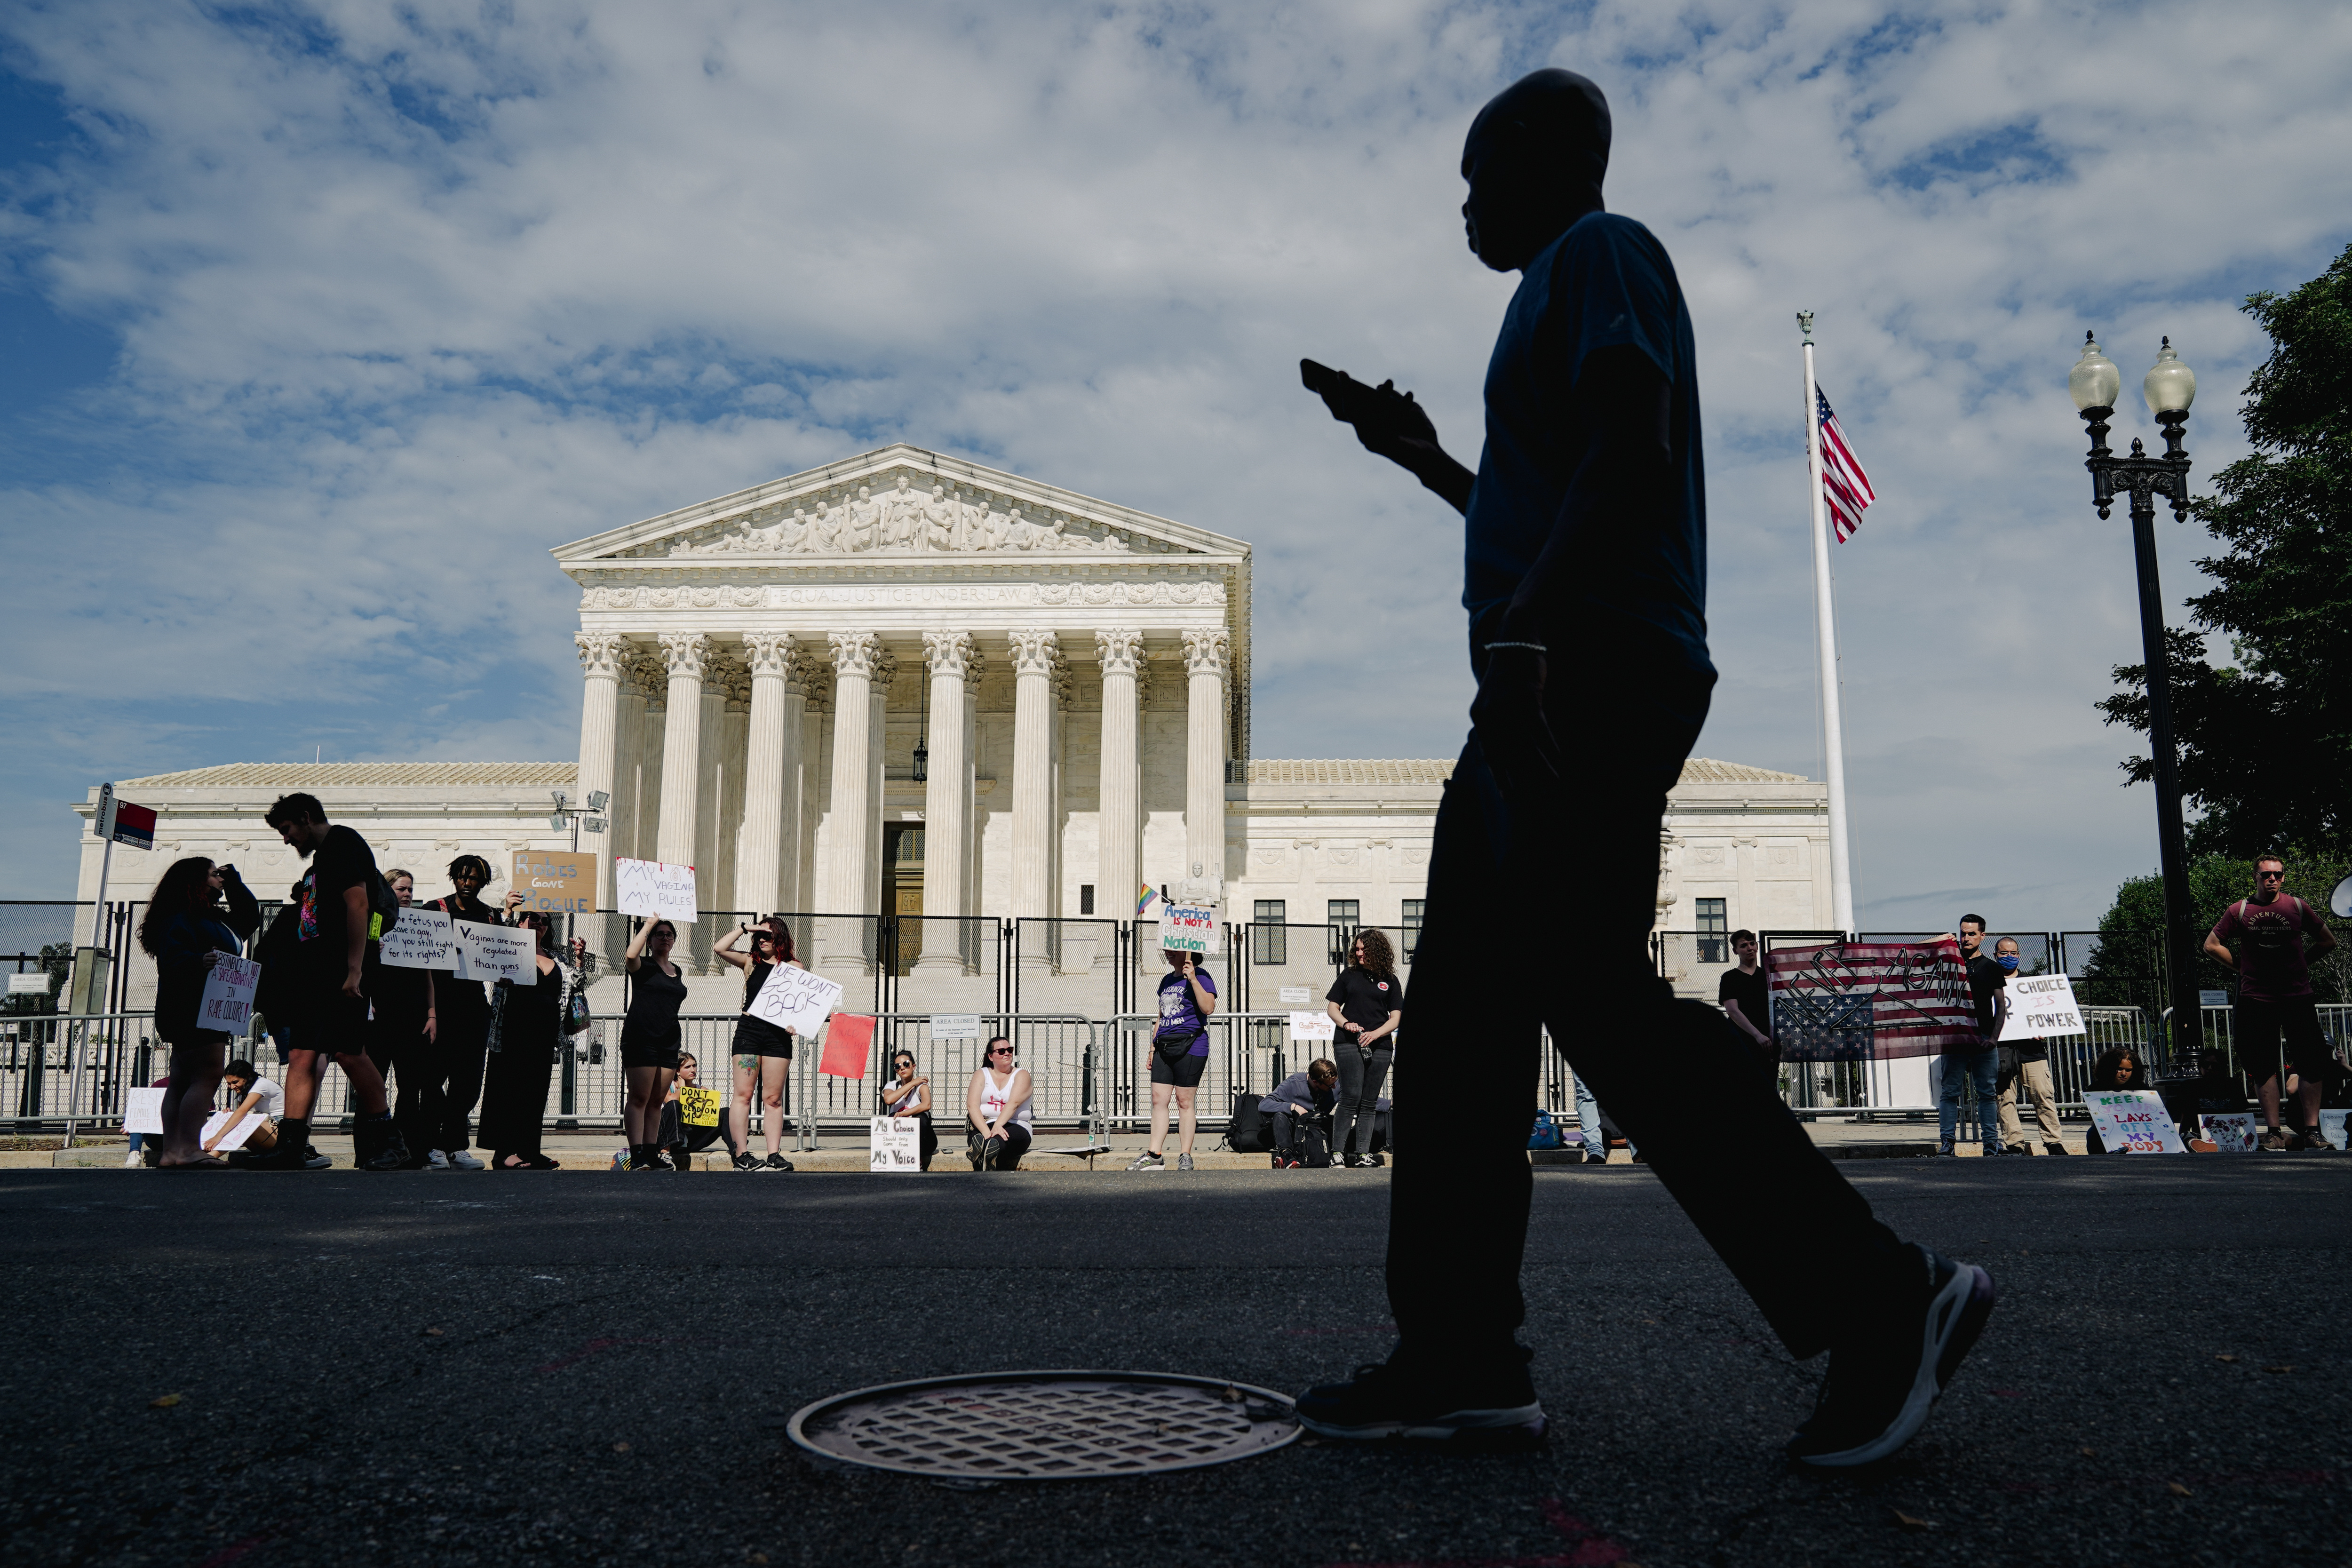 Una persona pasa junto a los partidarios del derecho al aborto mientras protestan ante el Tribunal Supremo en Washington el lunes 27 de junio de 2022. (Foto Prensa Libre: Shuran Huang/The New York Times)